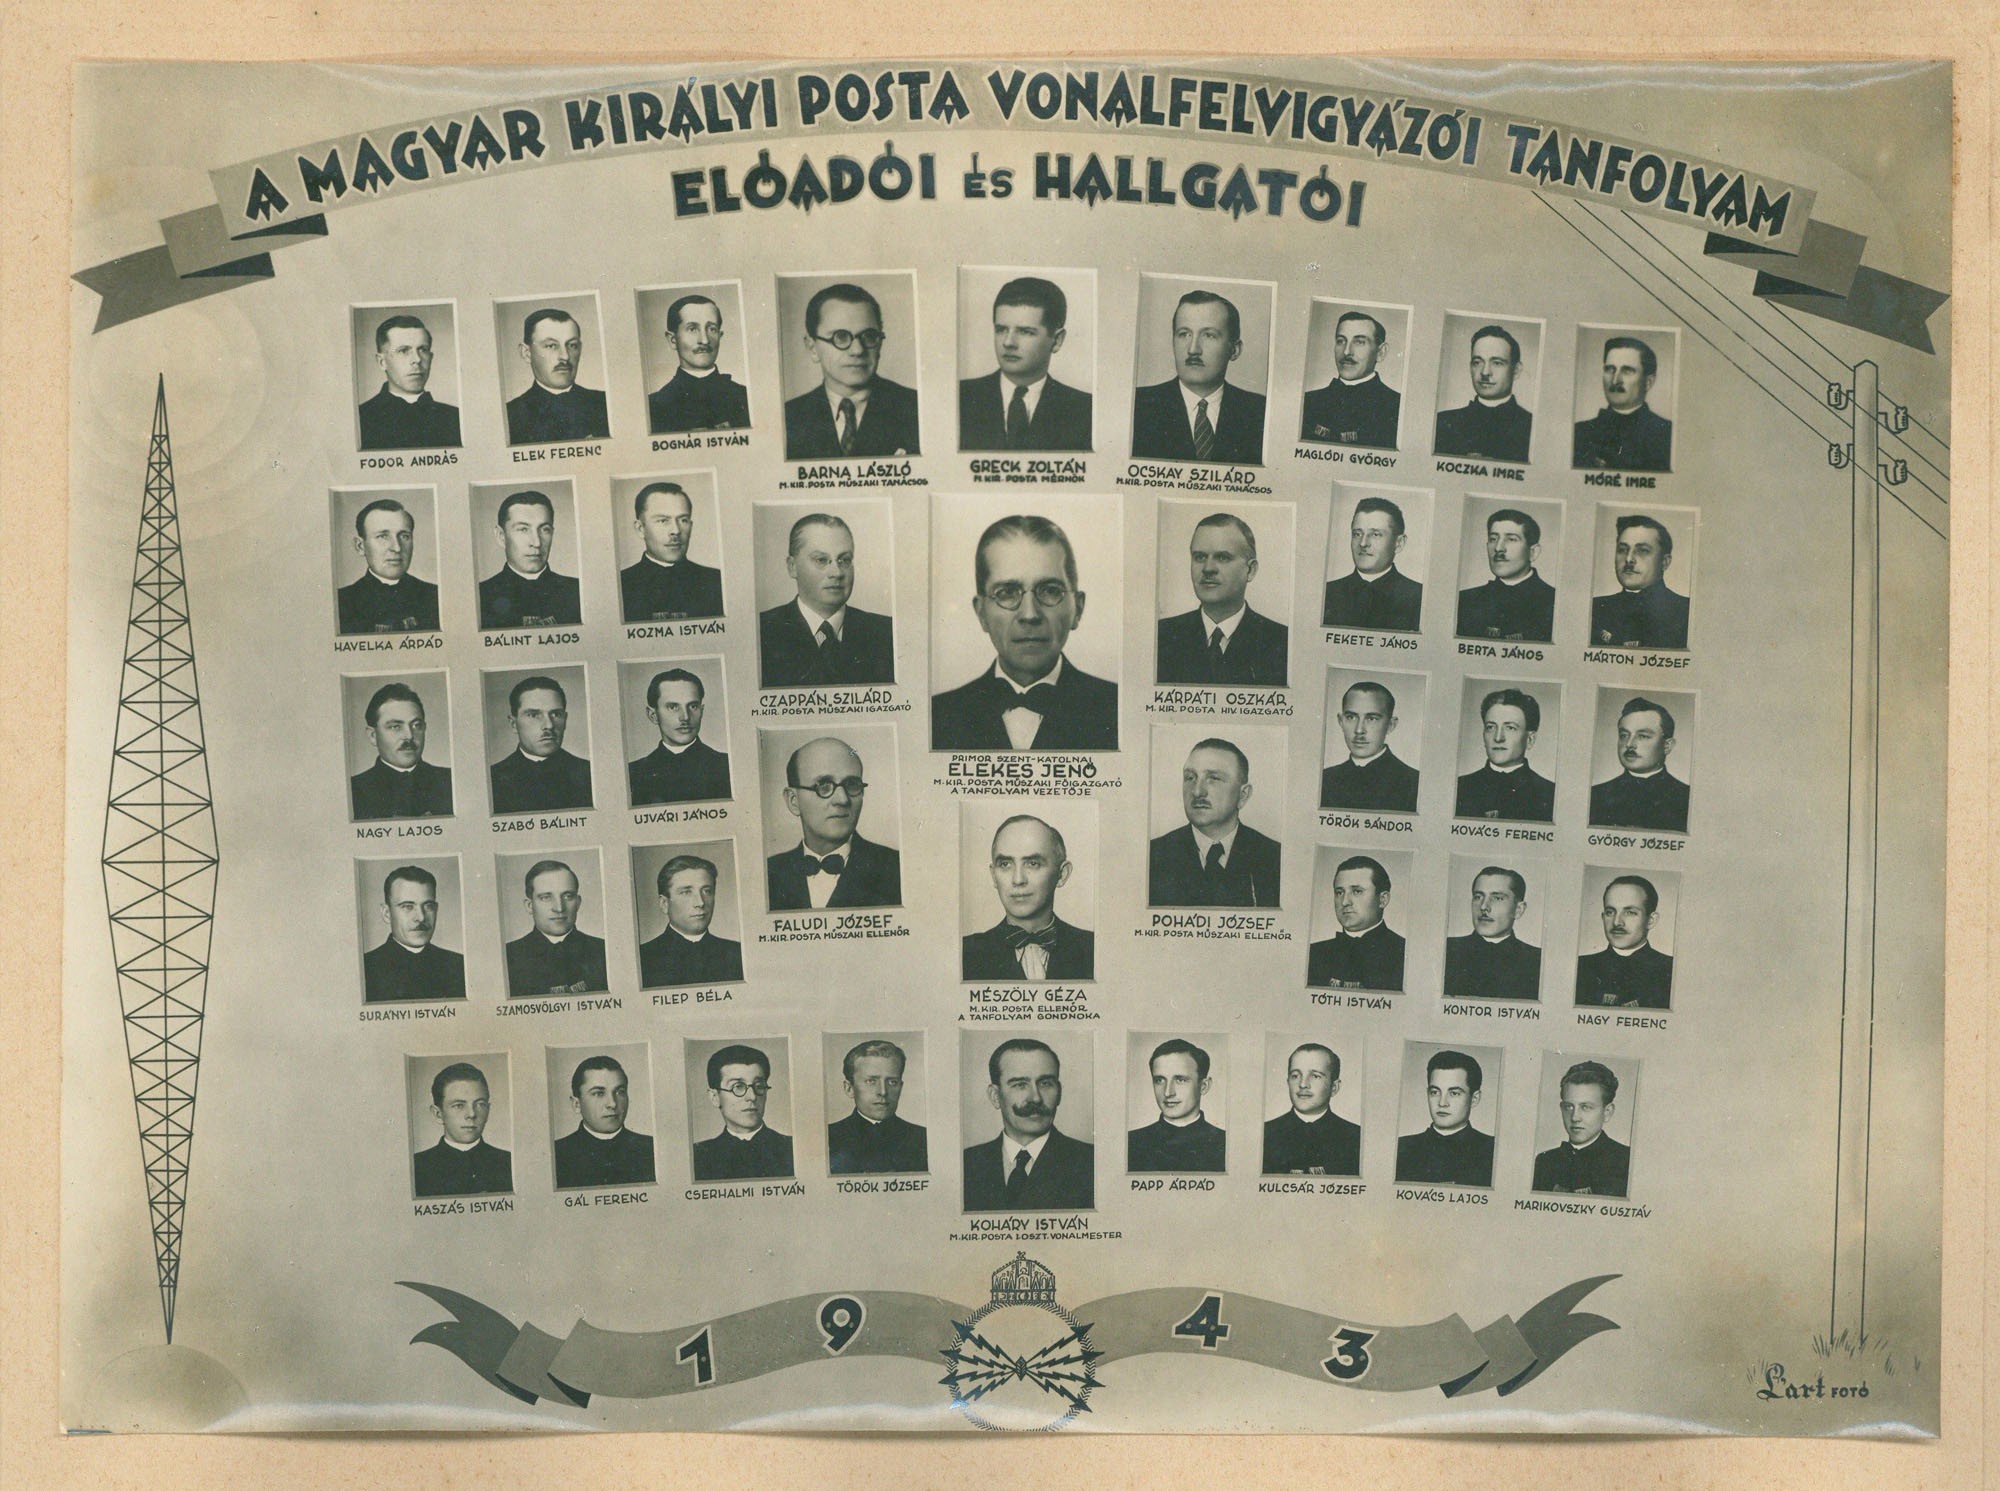 A magyar királyi posta vonalfelvigyázói tanfolyam előadói és hallgatói (Postamúzeum CC BY-NC-SA)